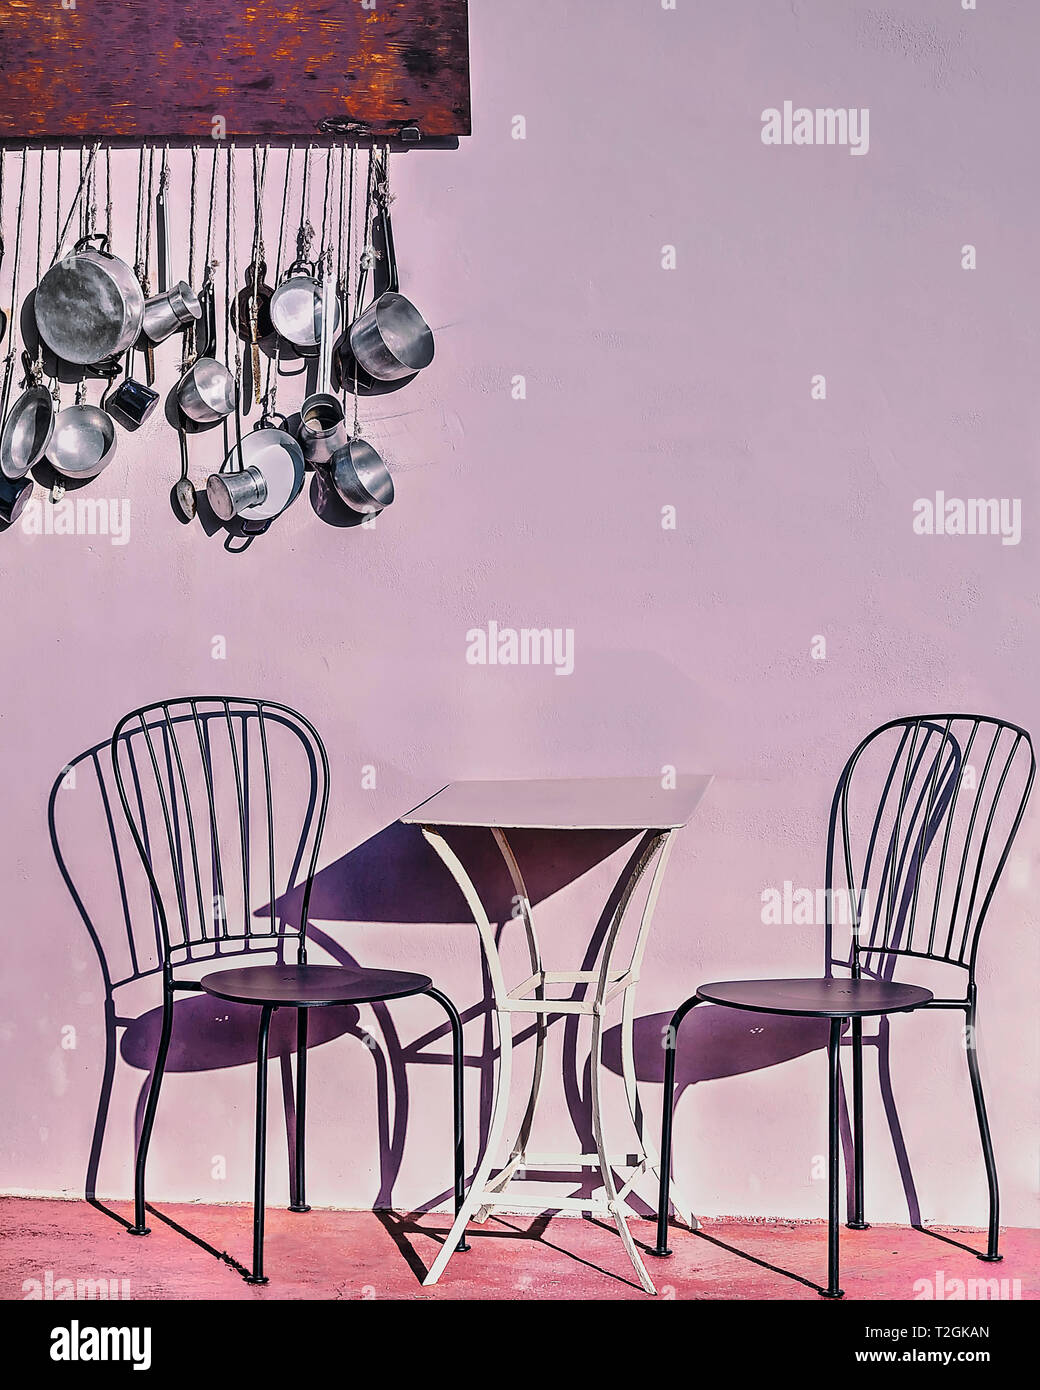 Un tavolo e due sedie all'aperto con le ombre . Cucina pentole e padelle appesi in background. Immagine di stock Foto Stock